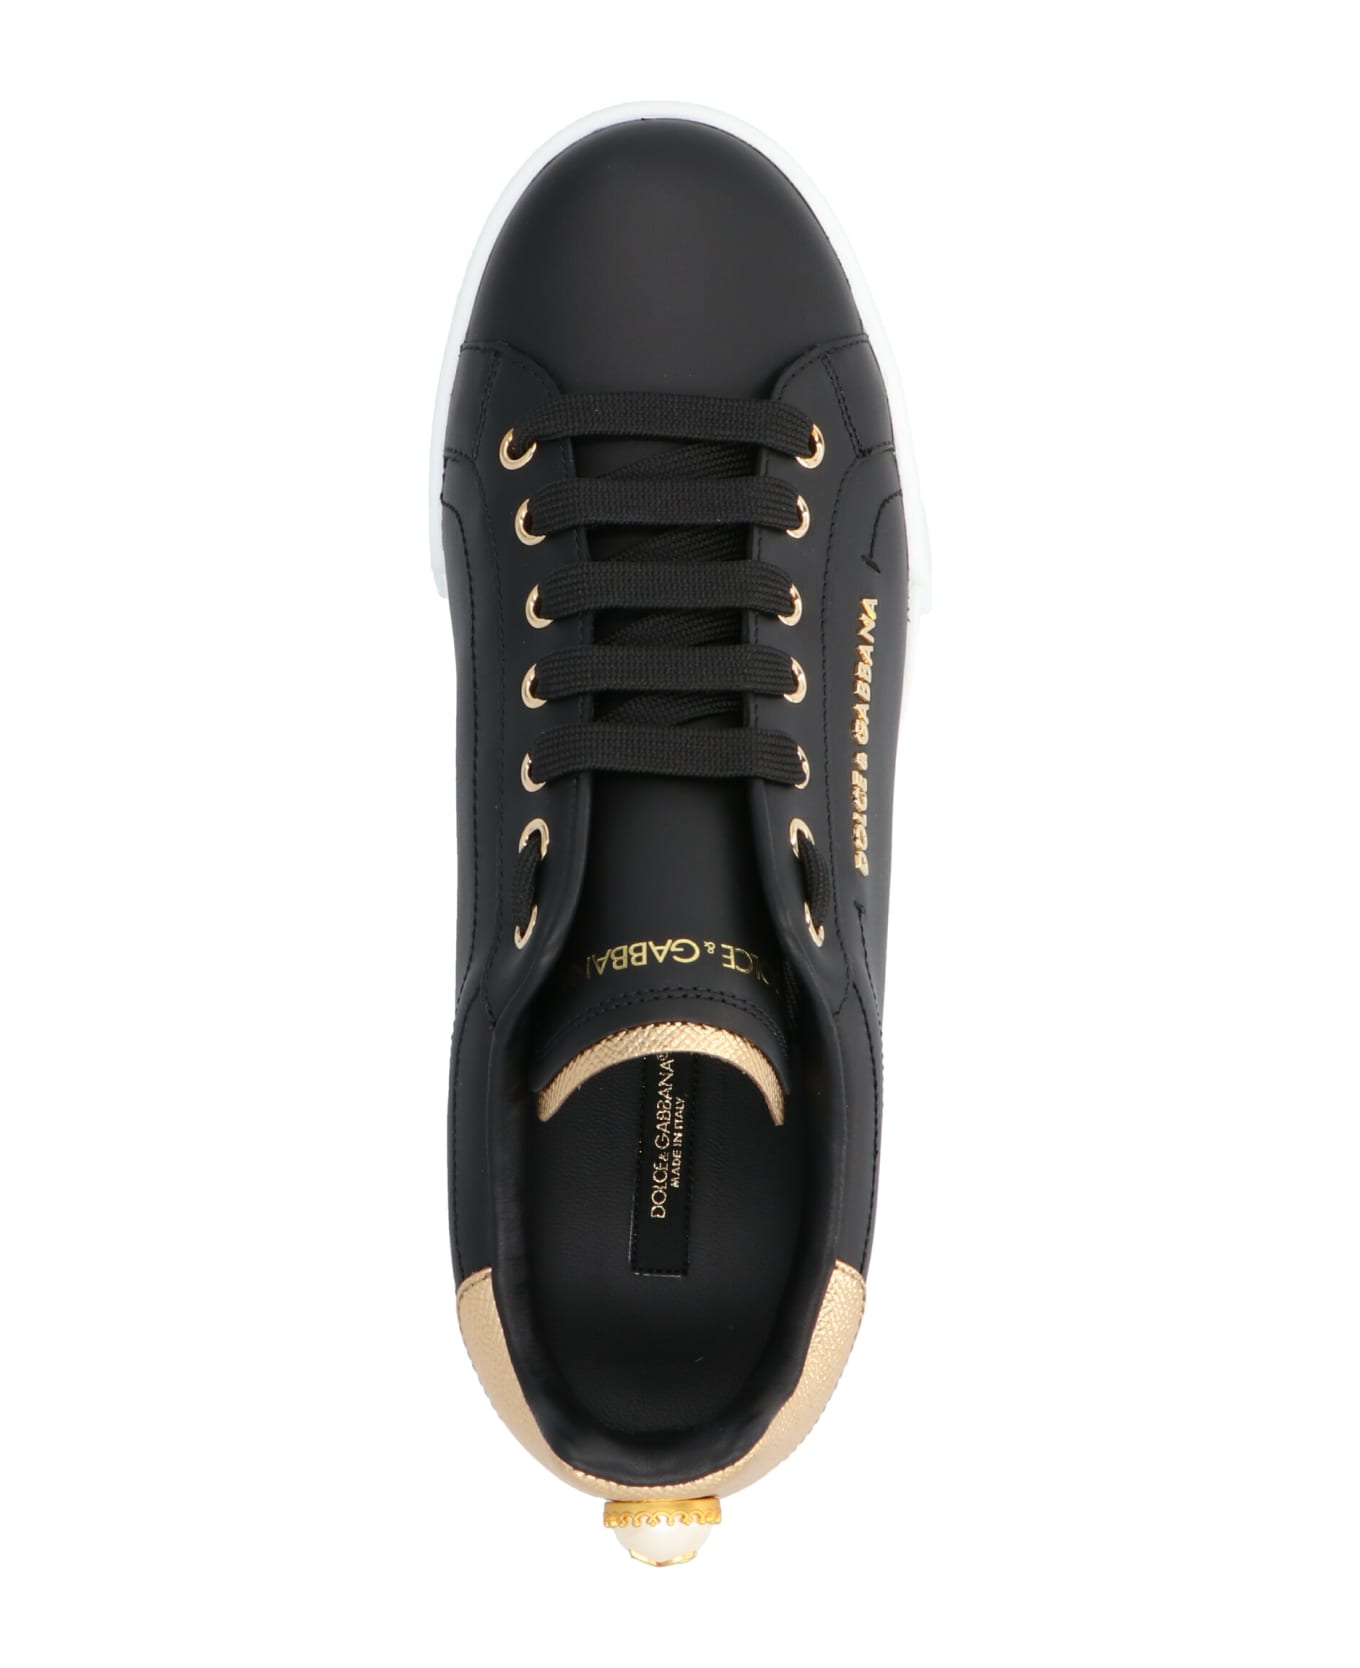 Dolce & Gabbana Portofino Sneakers - BLACK/GOLD